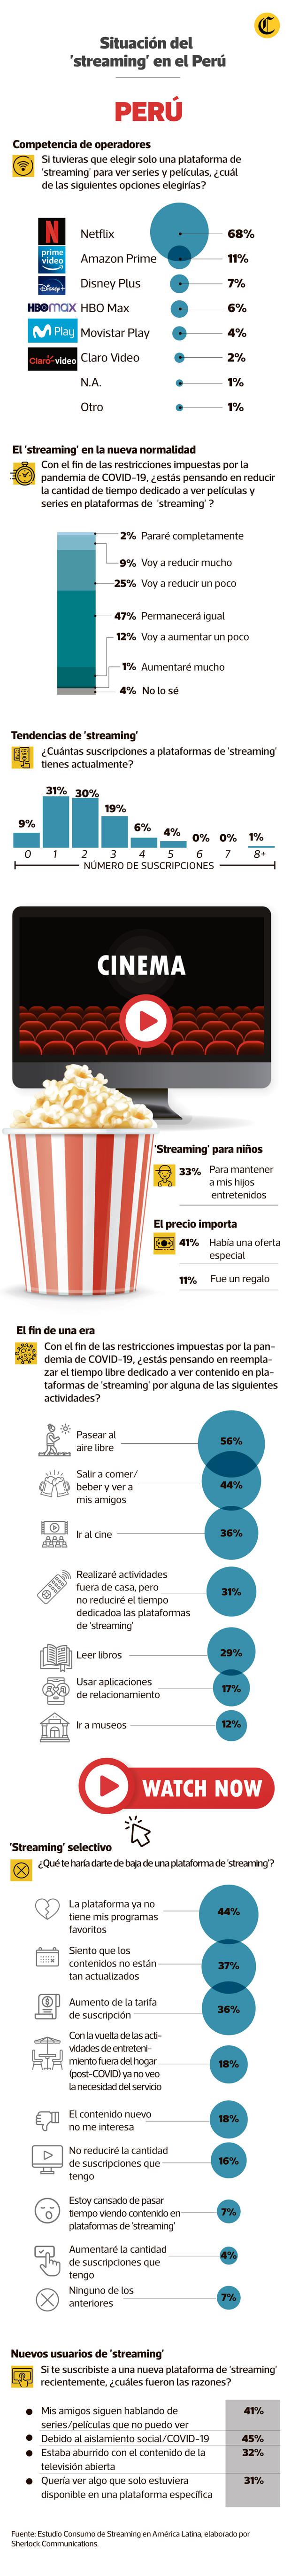 El consumo del 'streaming' ha crecido en el Perú. Netflix es la aplicación más utilizada. [INFOGRAFÍA: ANTONIO TARAZONA].